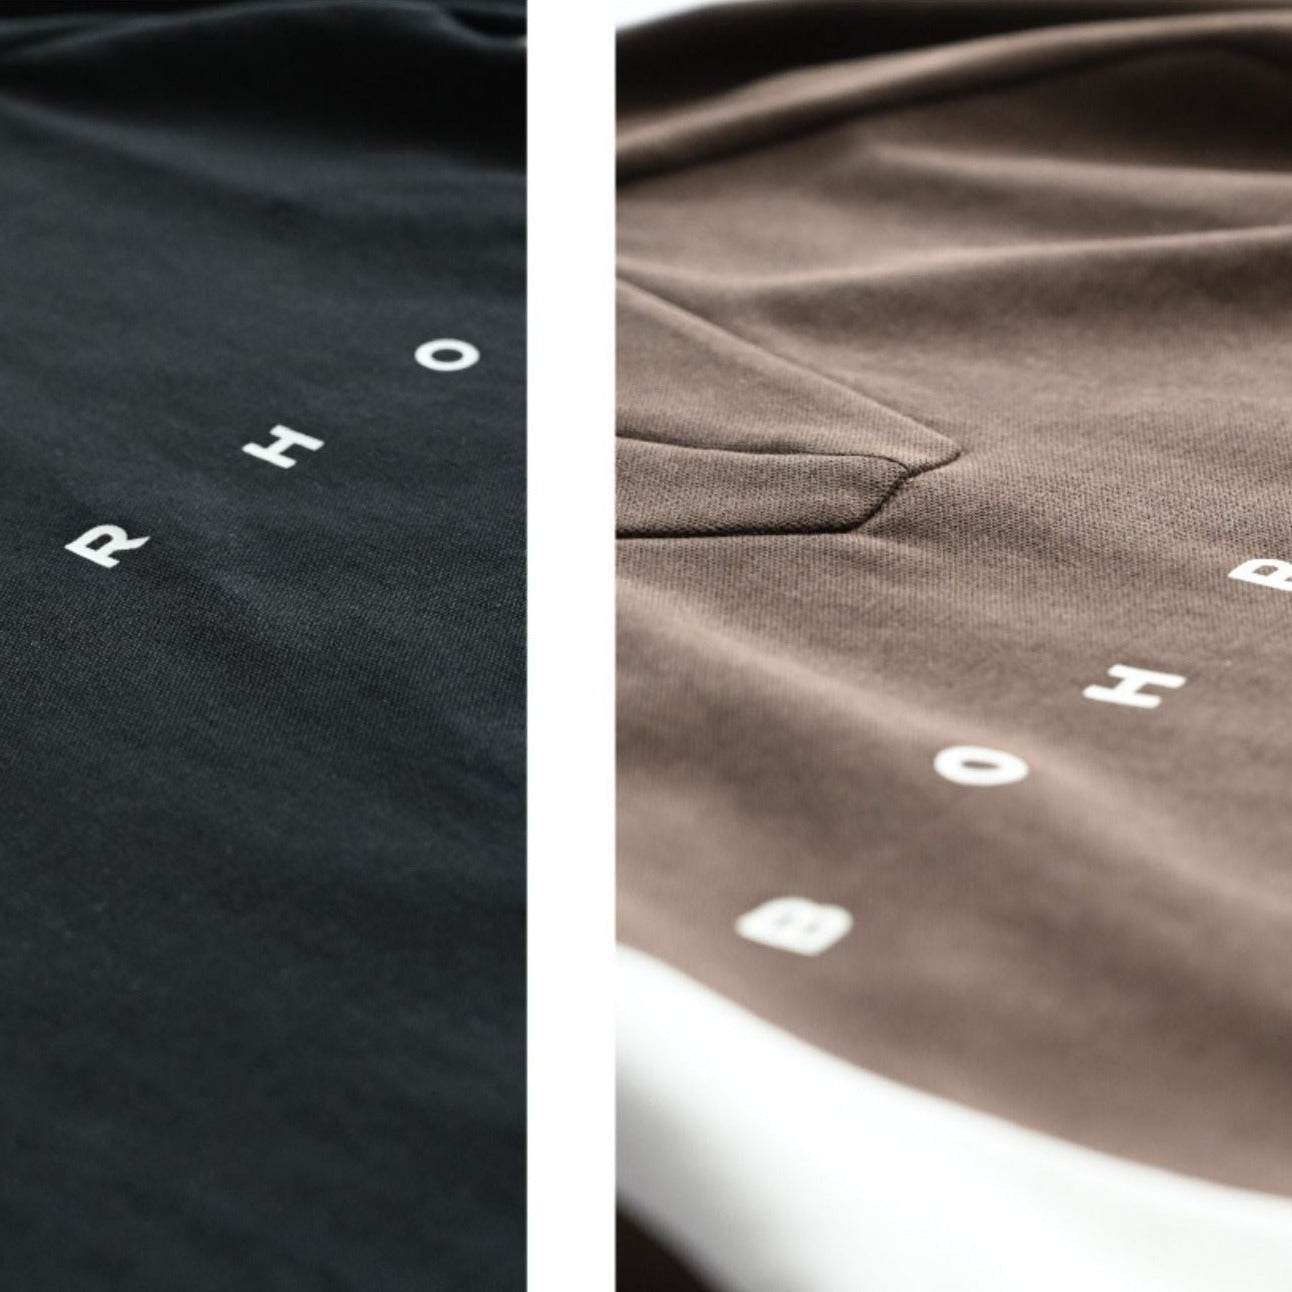 BOHRHOO / FS-141 drawstring splicing short-sleeved T-shirt